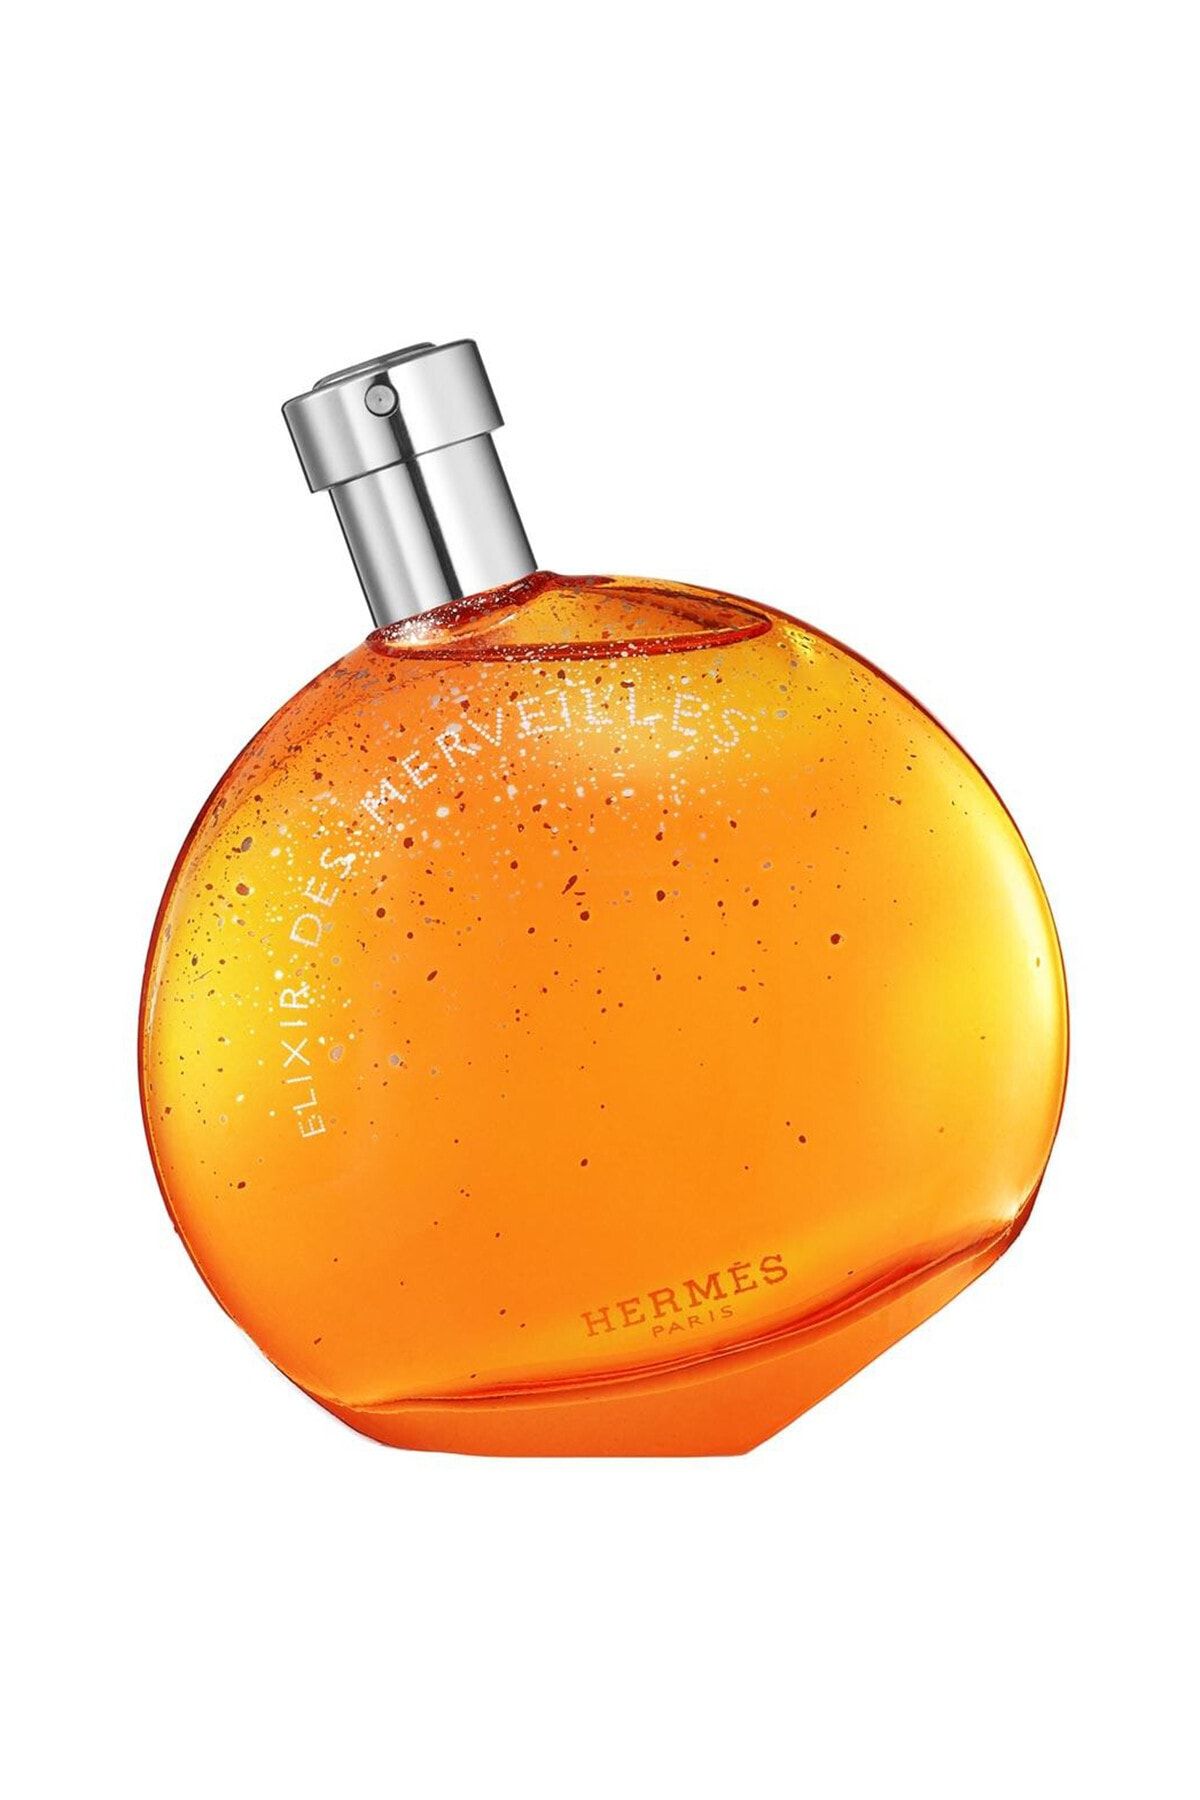 Hermes عطر زنانه Elixir Des Merveilles ادوپرفیوم 100 ml